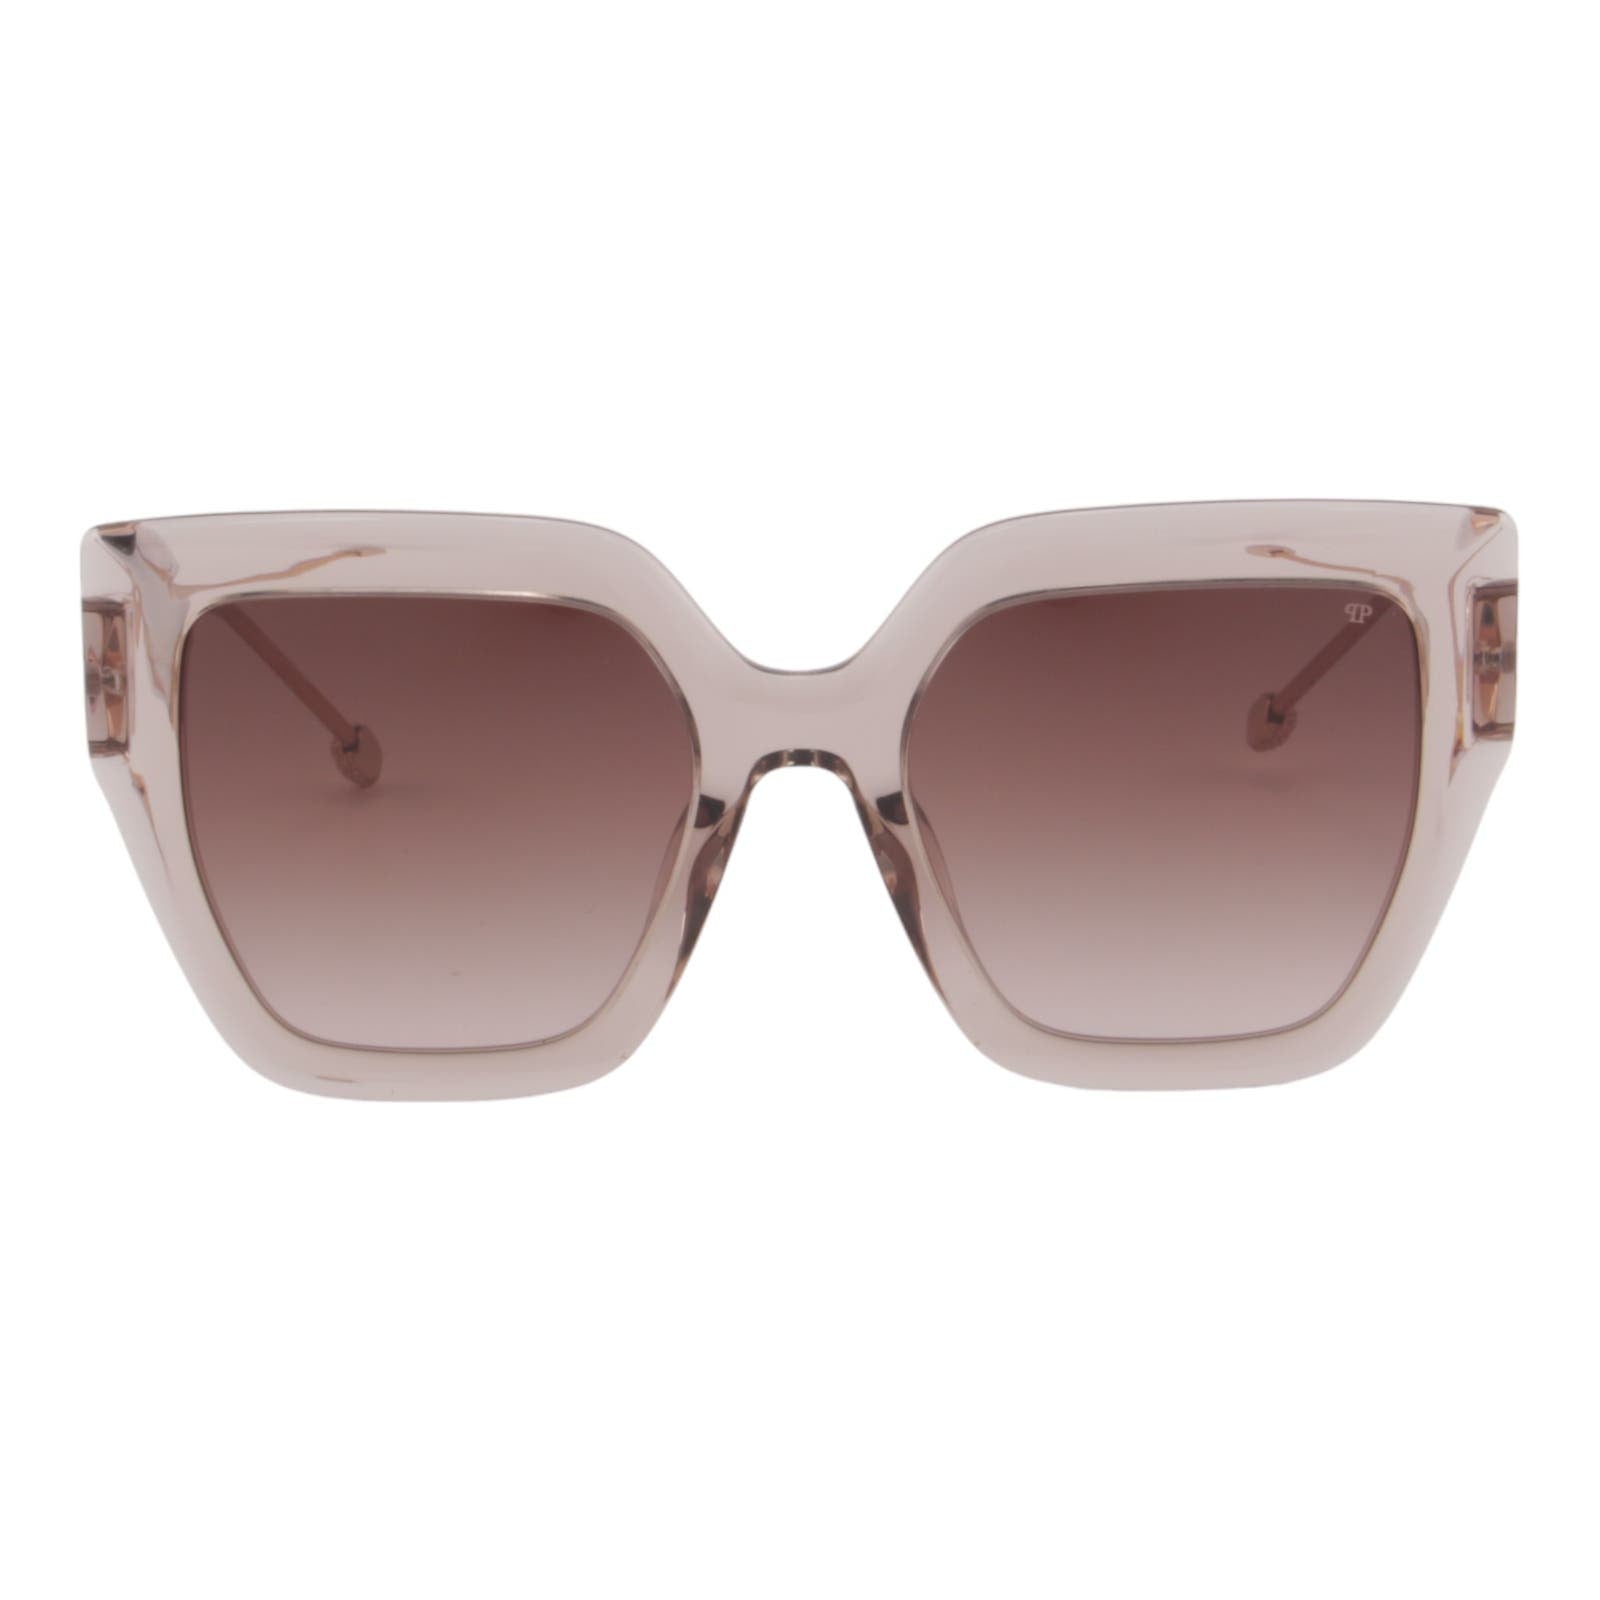 Women Cat-Eye Transparent Sunglasses SPP064S-07T1 Oversized Rose Gold & Beige Frame